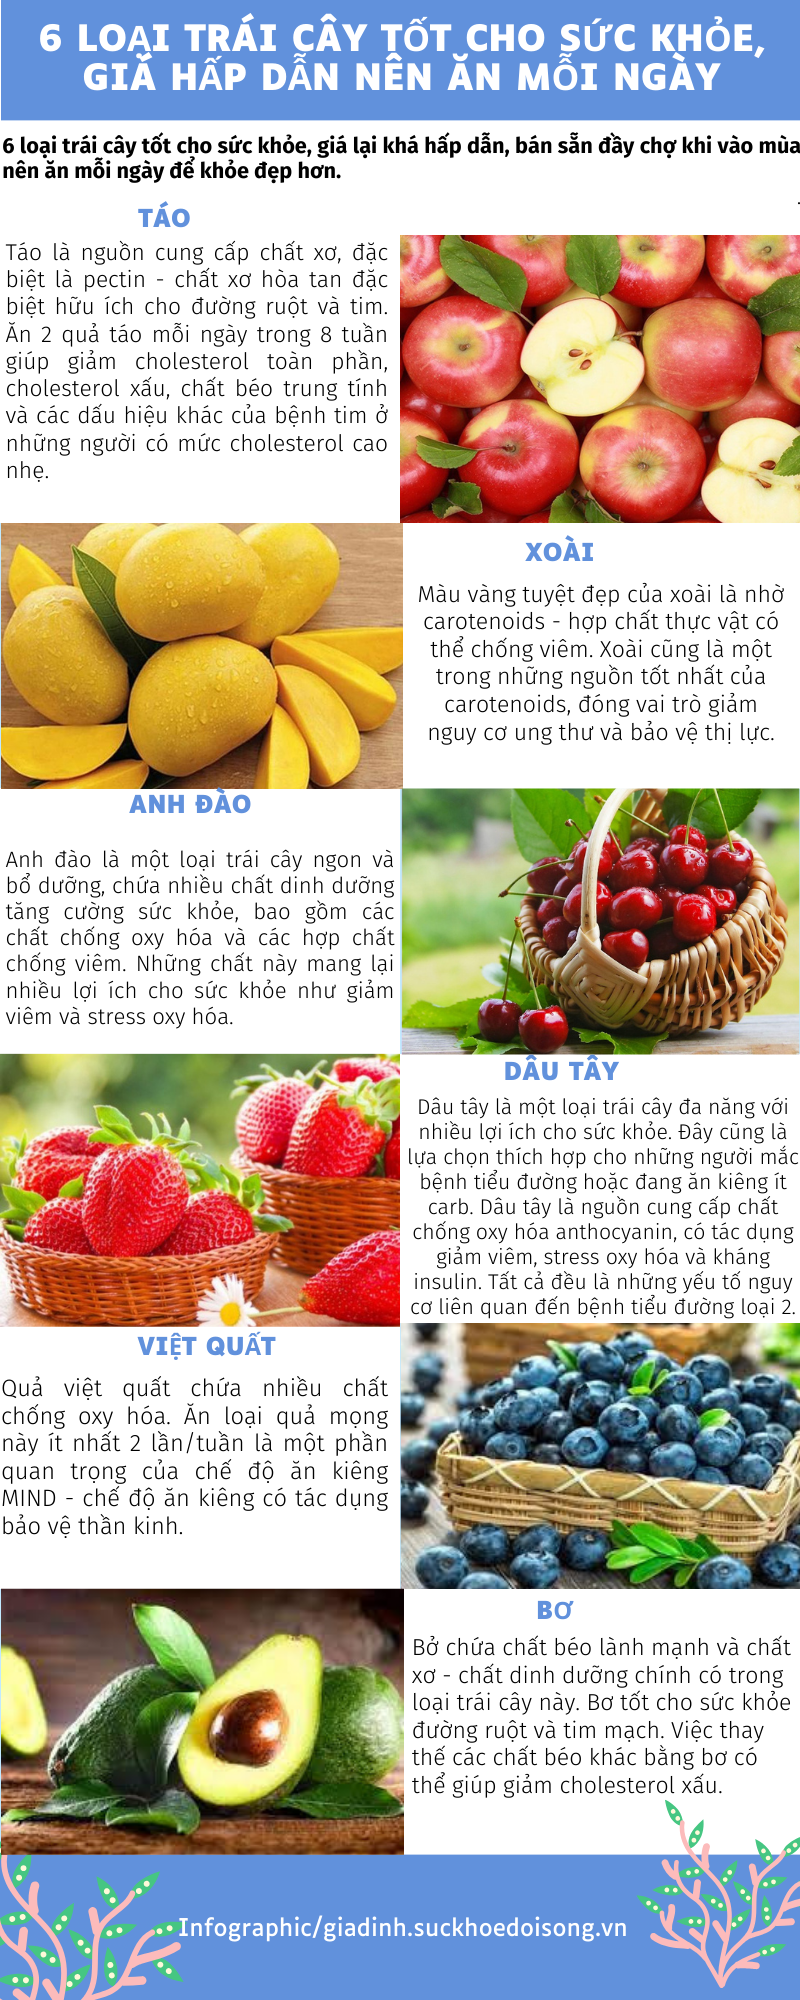 6 loại trái cây tốt cho sức khỏe, giá hấp dẫn nên ăn mỗi ngày - Ảnh 1.